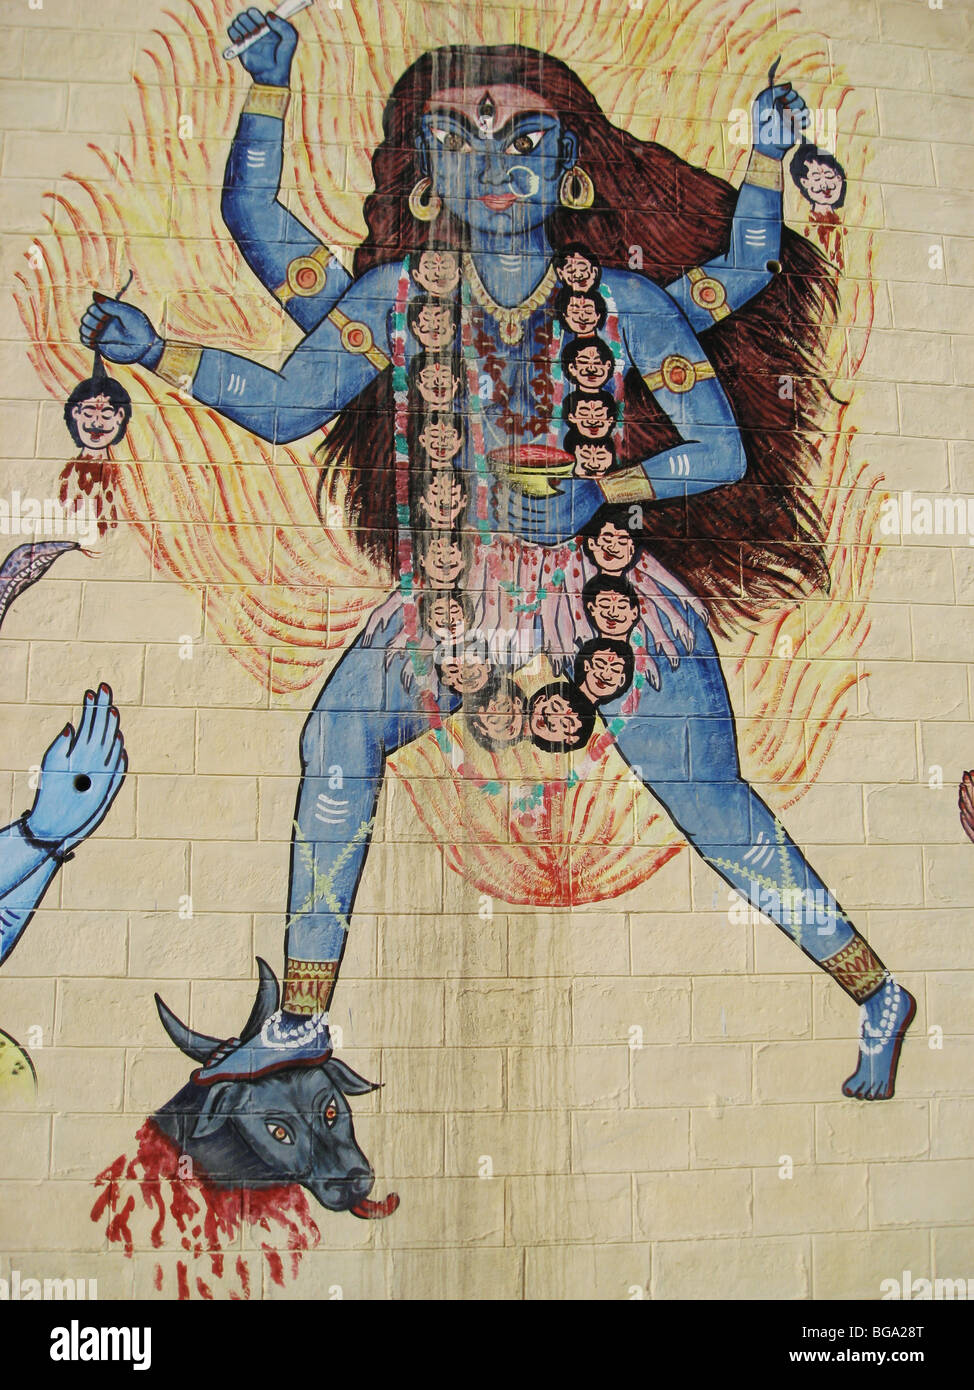 Bild von Lord Shiva auf einer Wand in Puri, Orissa, Indien. Stockfoto